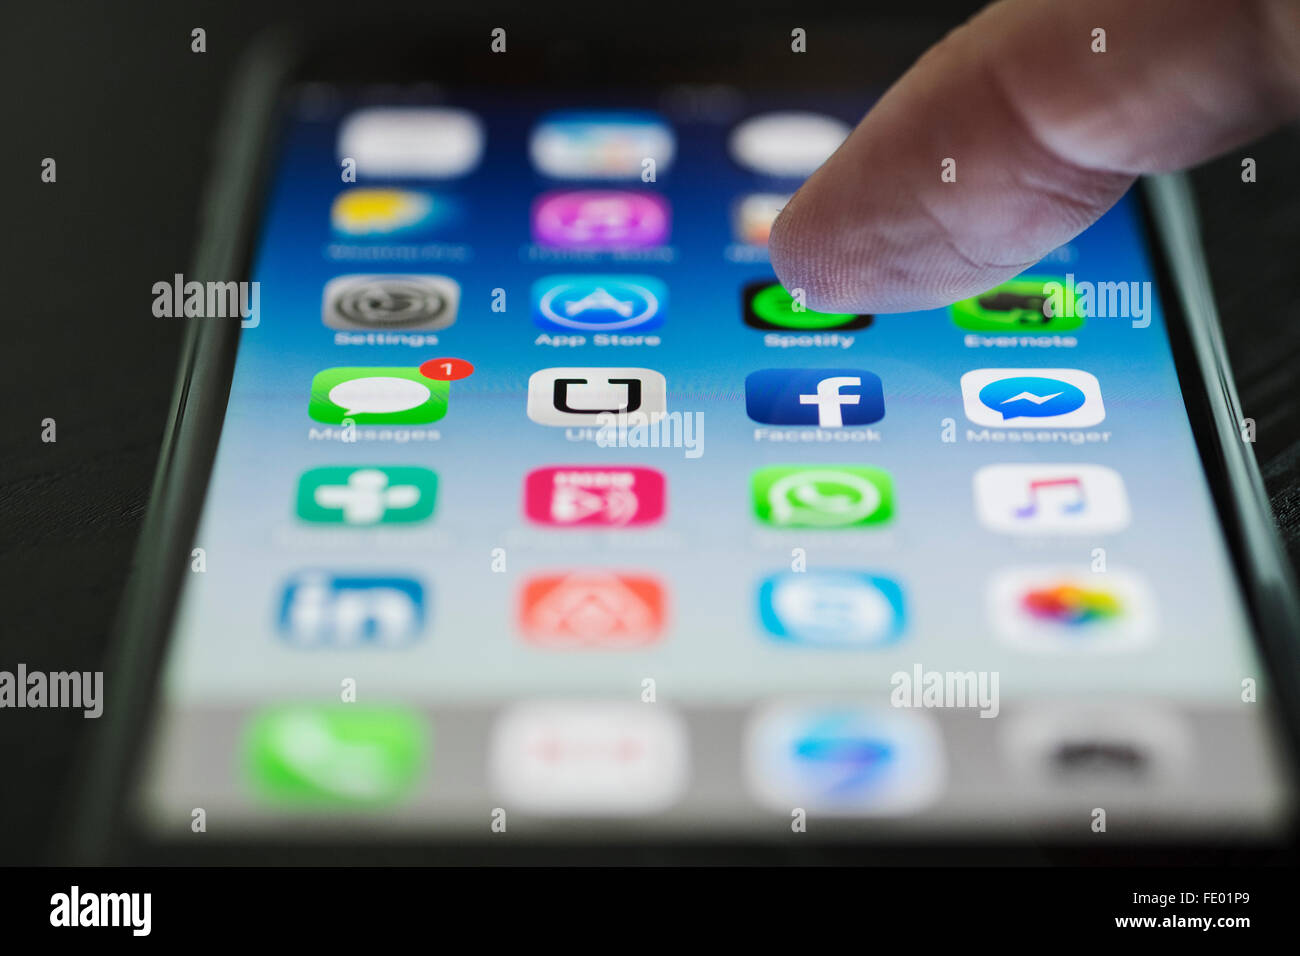 Dettaglio di molte delle app sulla schermata Home di iPhone 6 Plus smart phone Foto Stock